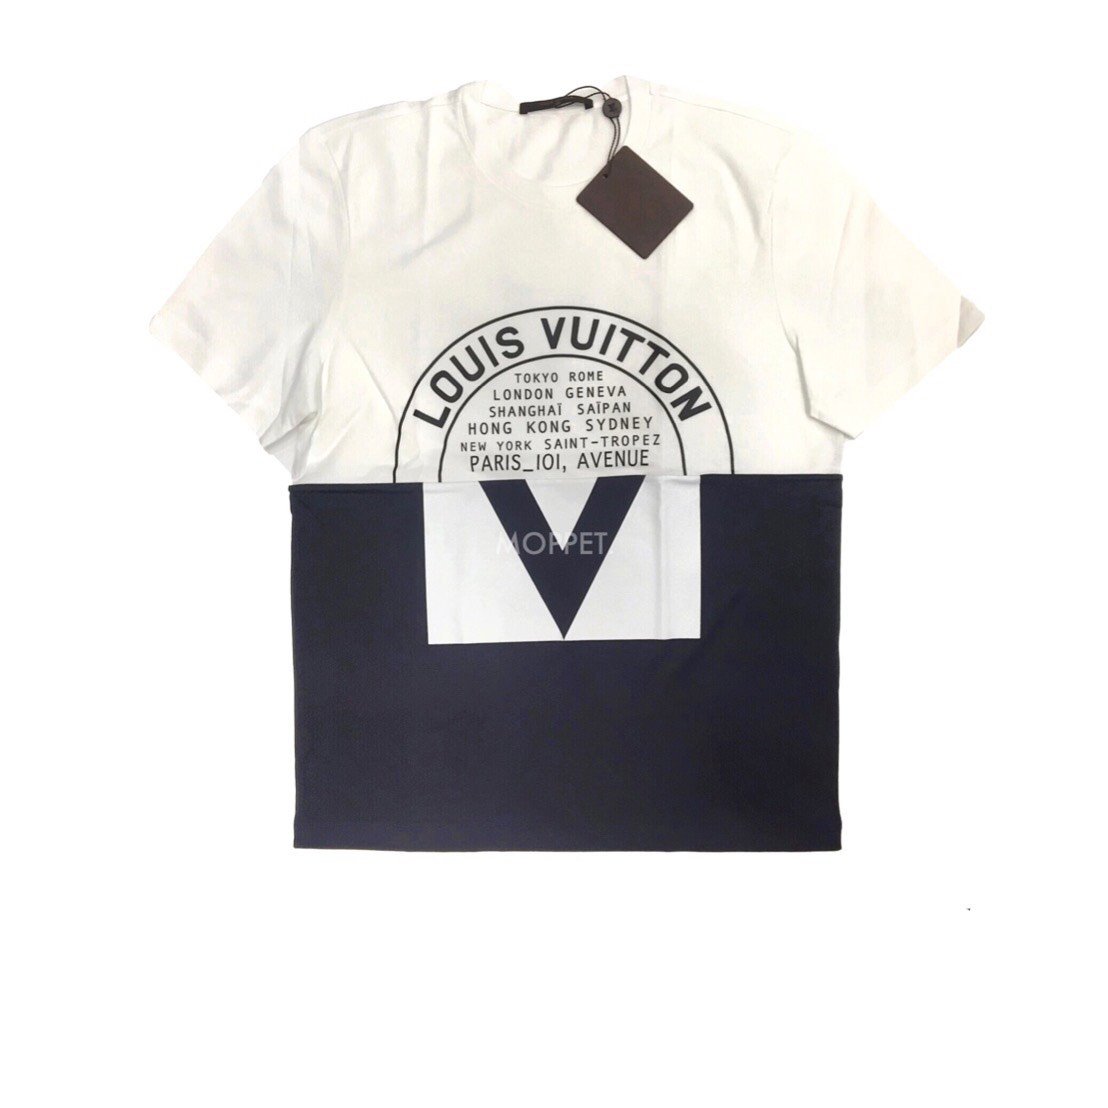 Louis Vuitton white Cotton Paris T-Shirt